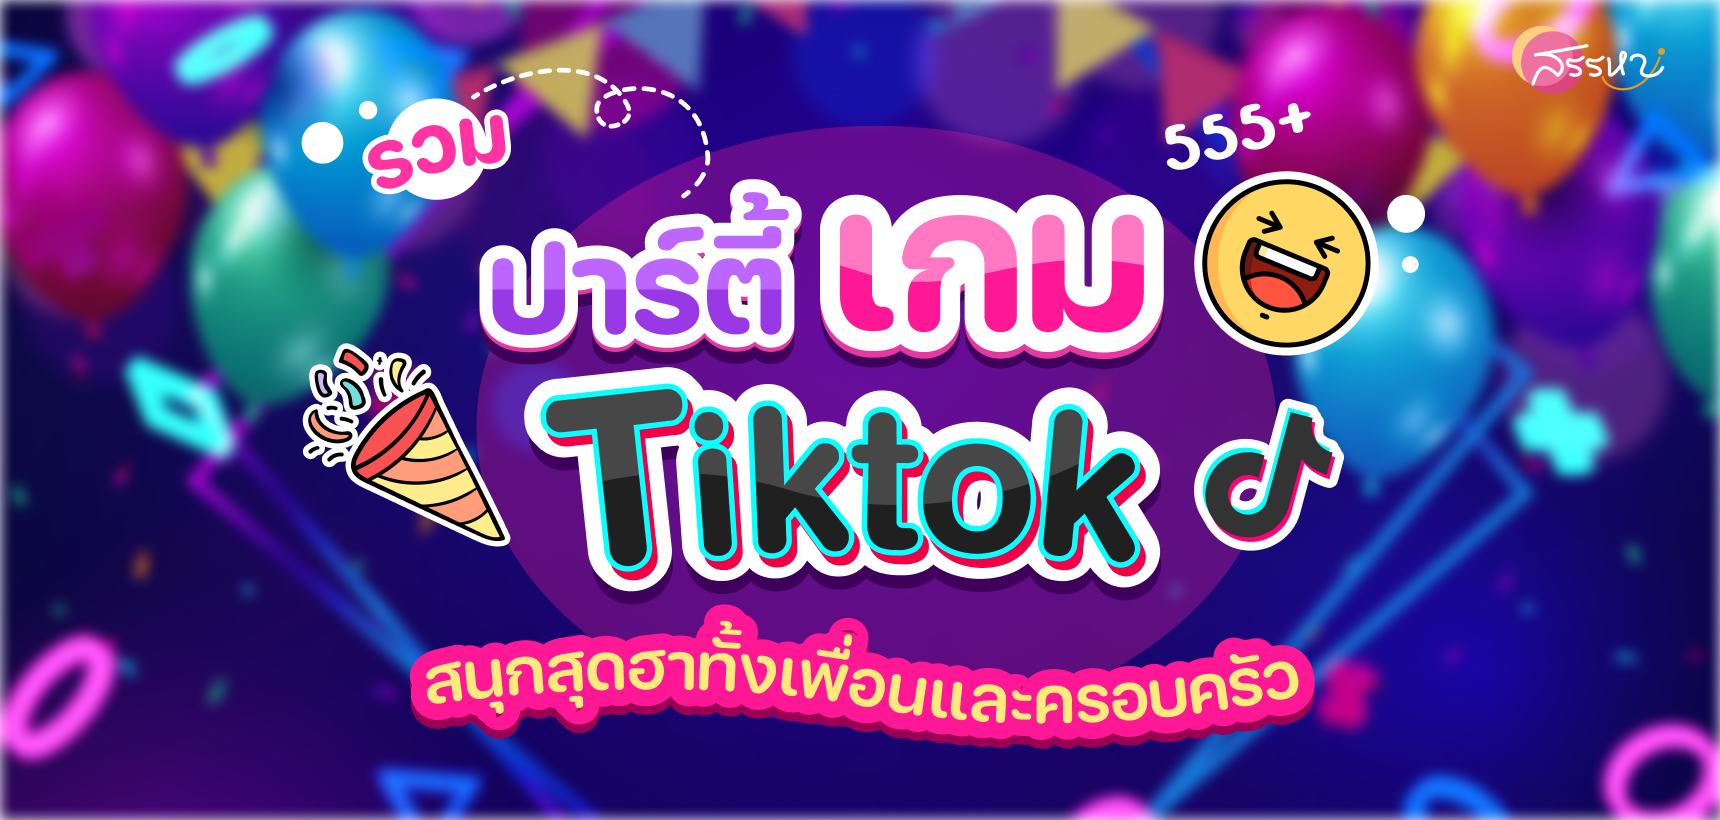 รวมปาร์ตี้เกม Tiktok สนุกสุดฮาทั้งกับเพื่อนและครอบครัว